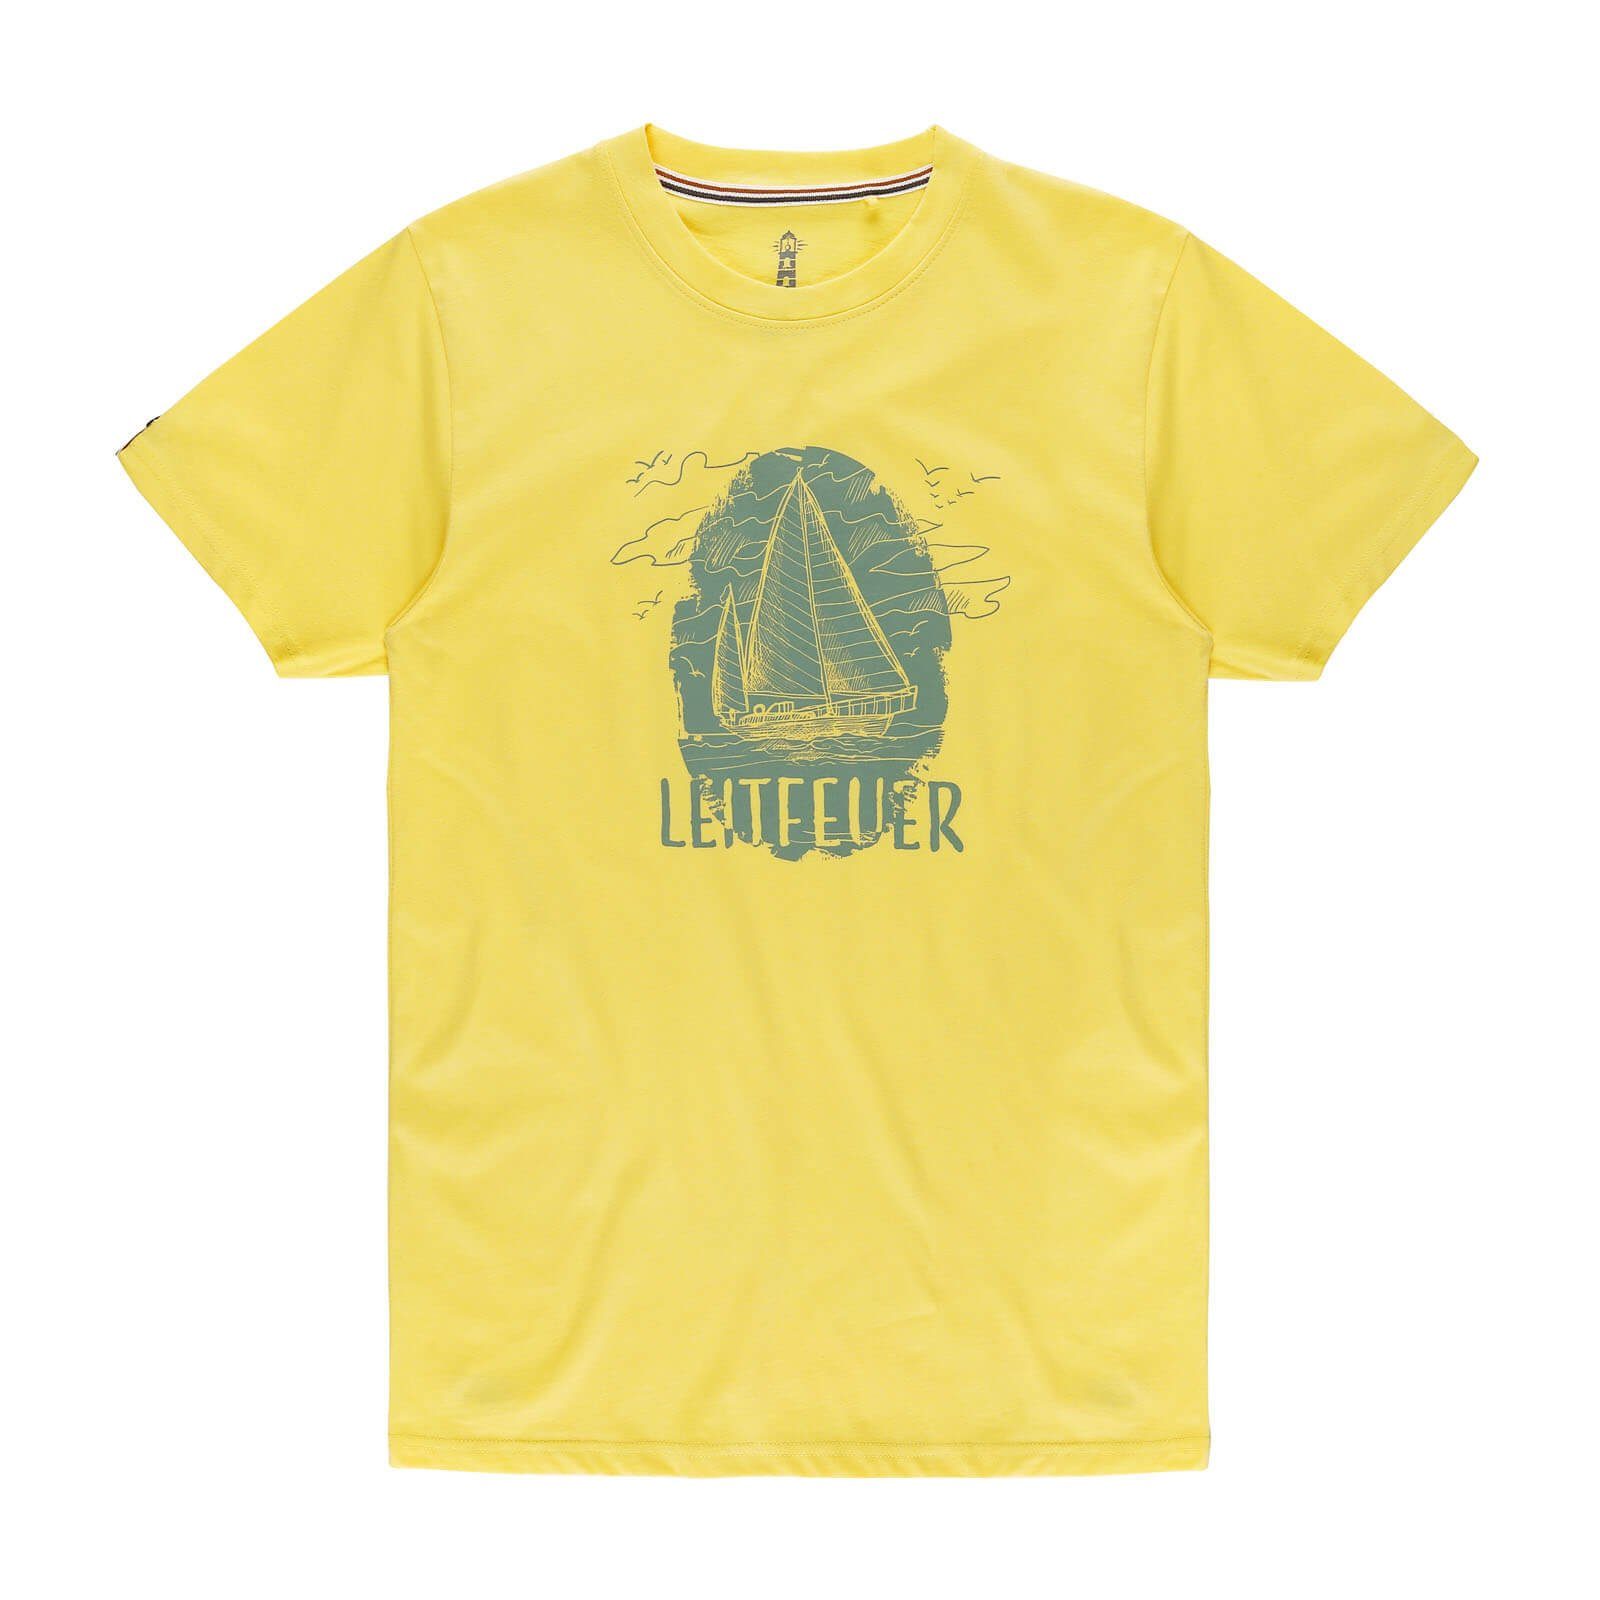 Sommershirt Leitfeuer T-Shirt Herren und Segelschiff Front-Print gelb Rundhalsausschnitt mit